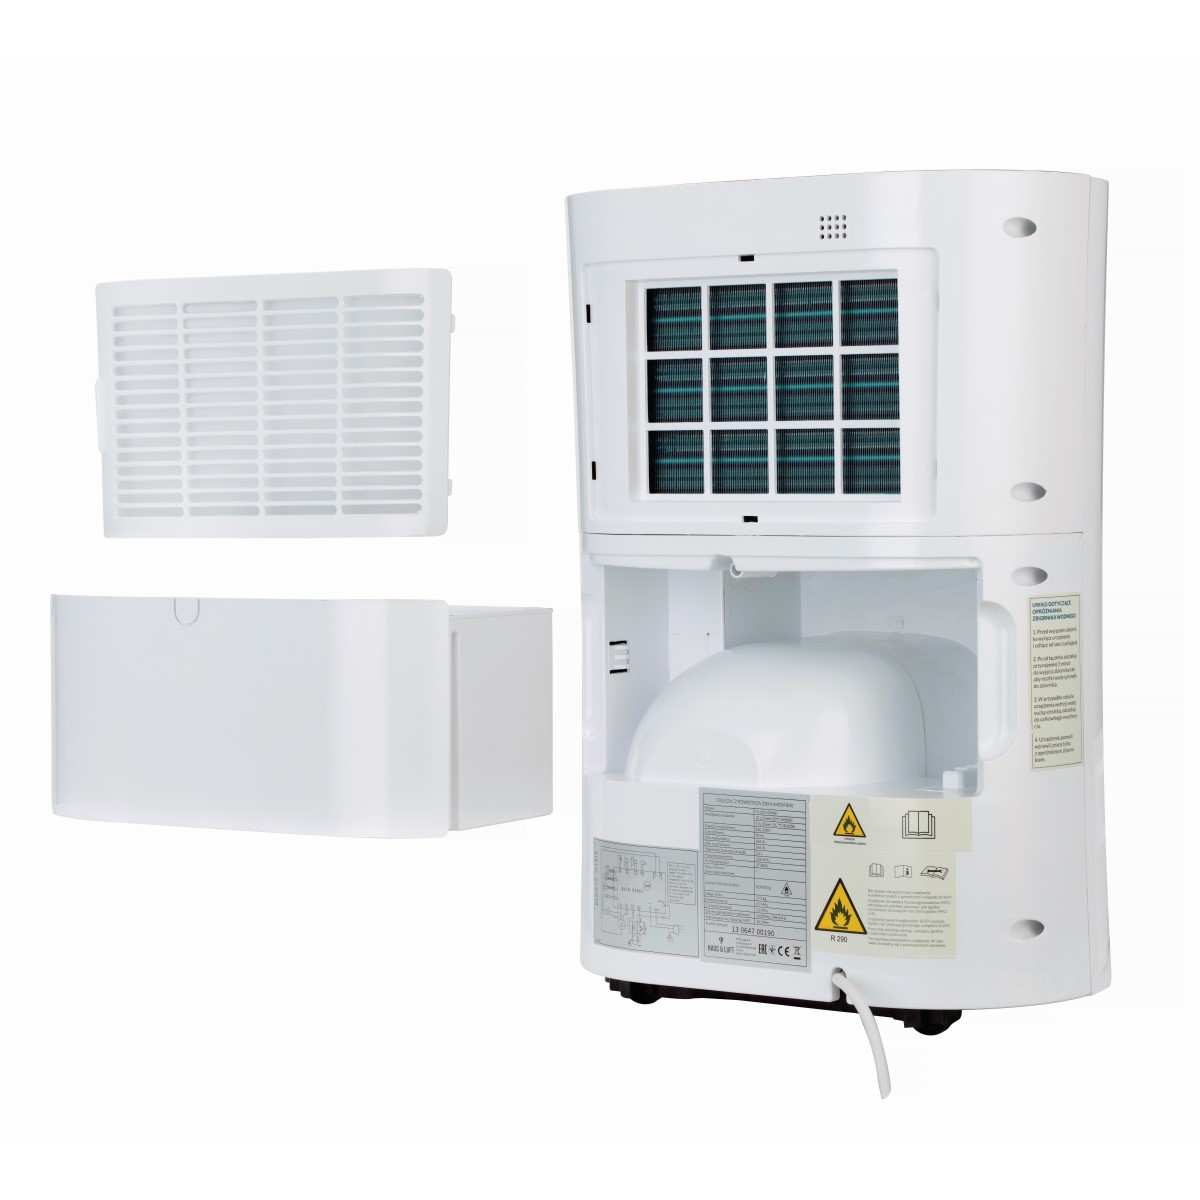 HAUS & LUFT odvlhčovač vzduchu HL-OS-10 WiFi, HL-OS-10/WiFi, 5903151017994, HL-OS-10/WiFi, vlhkosť v interiéri, odstránenie vlhkosti, kvalitný odvlhčovač, vlhkosť domova, elektrický odvlhčovač, odvlhčovanie vzduchu, odvlhčovač pre byty, bezúdržbový odvlhčovač, účinný odvlhčovač vzduchu, odvlhčovač s UV lampou, vnútro